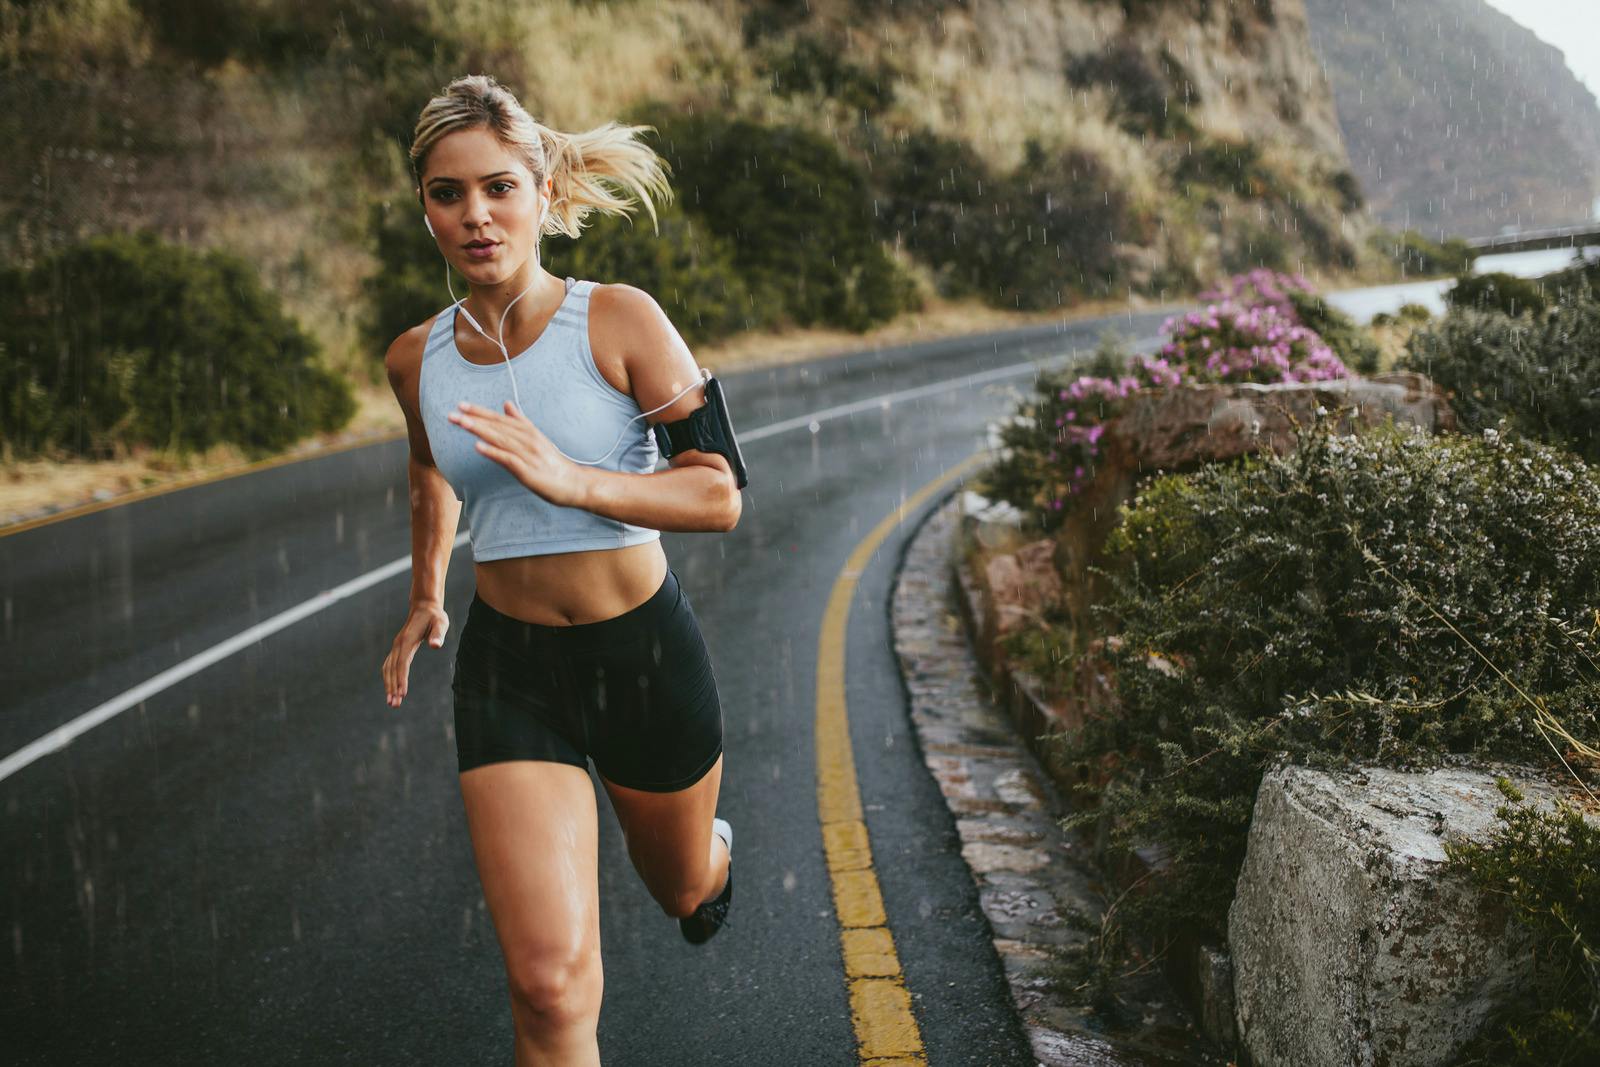 21 किलोमीटर मैराथन प्रशिक्षण योजना: रनटोपिया आपको समाप्ति रेखा की ओर दौड़ने में मदद करता है